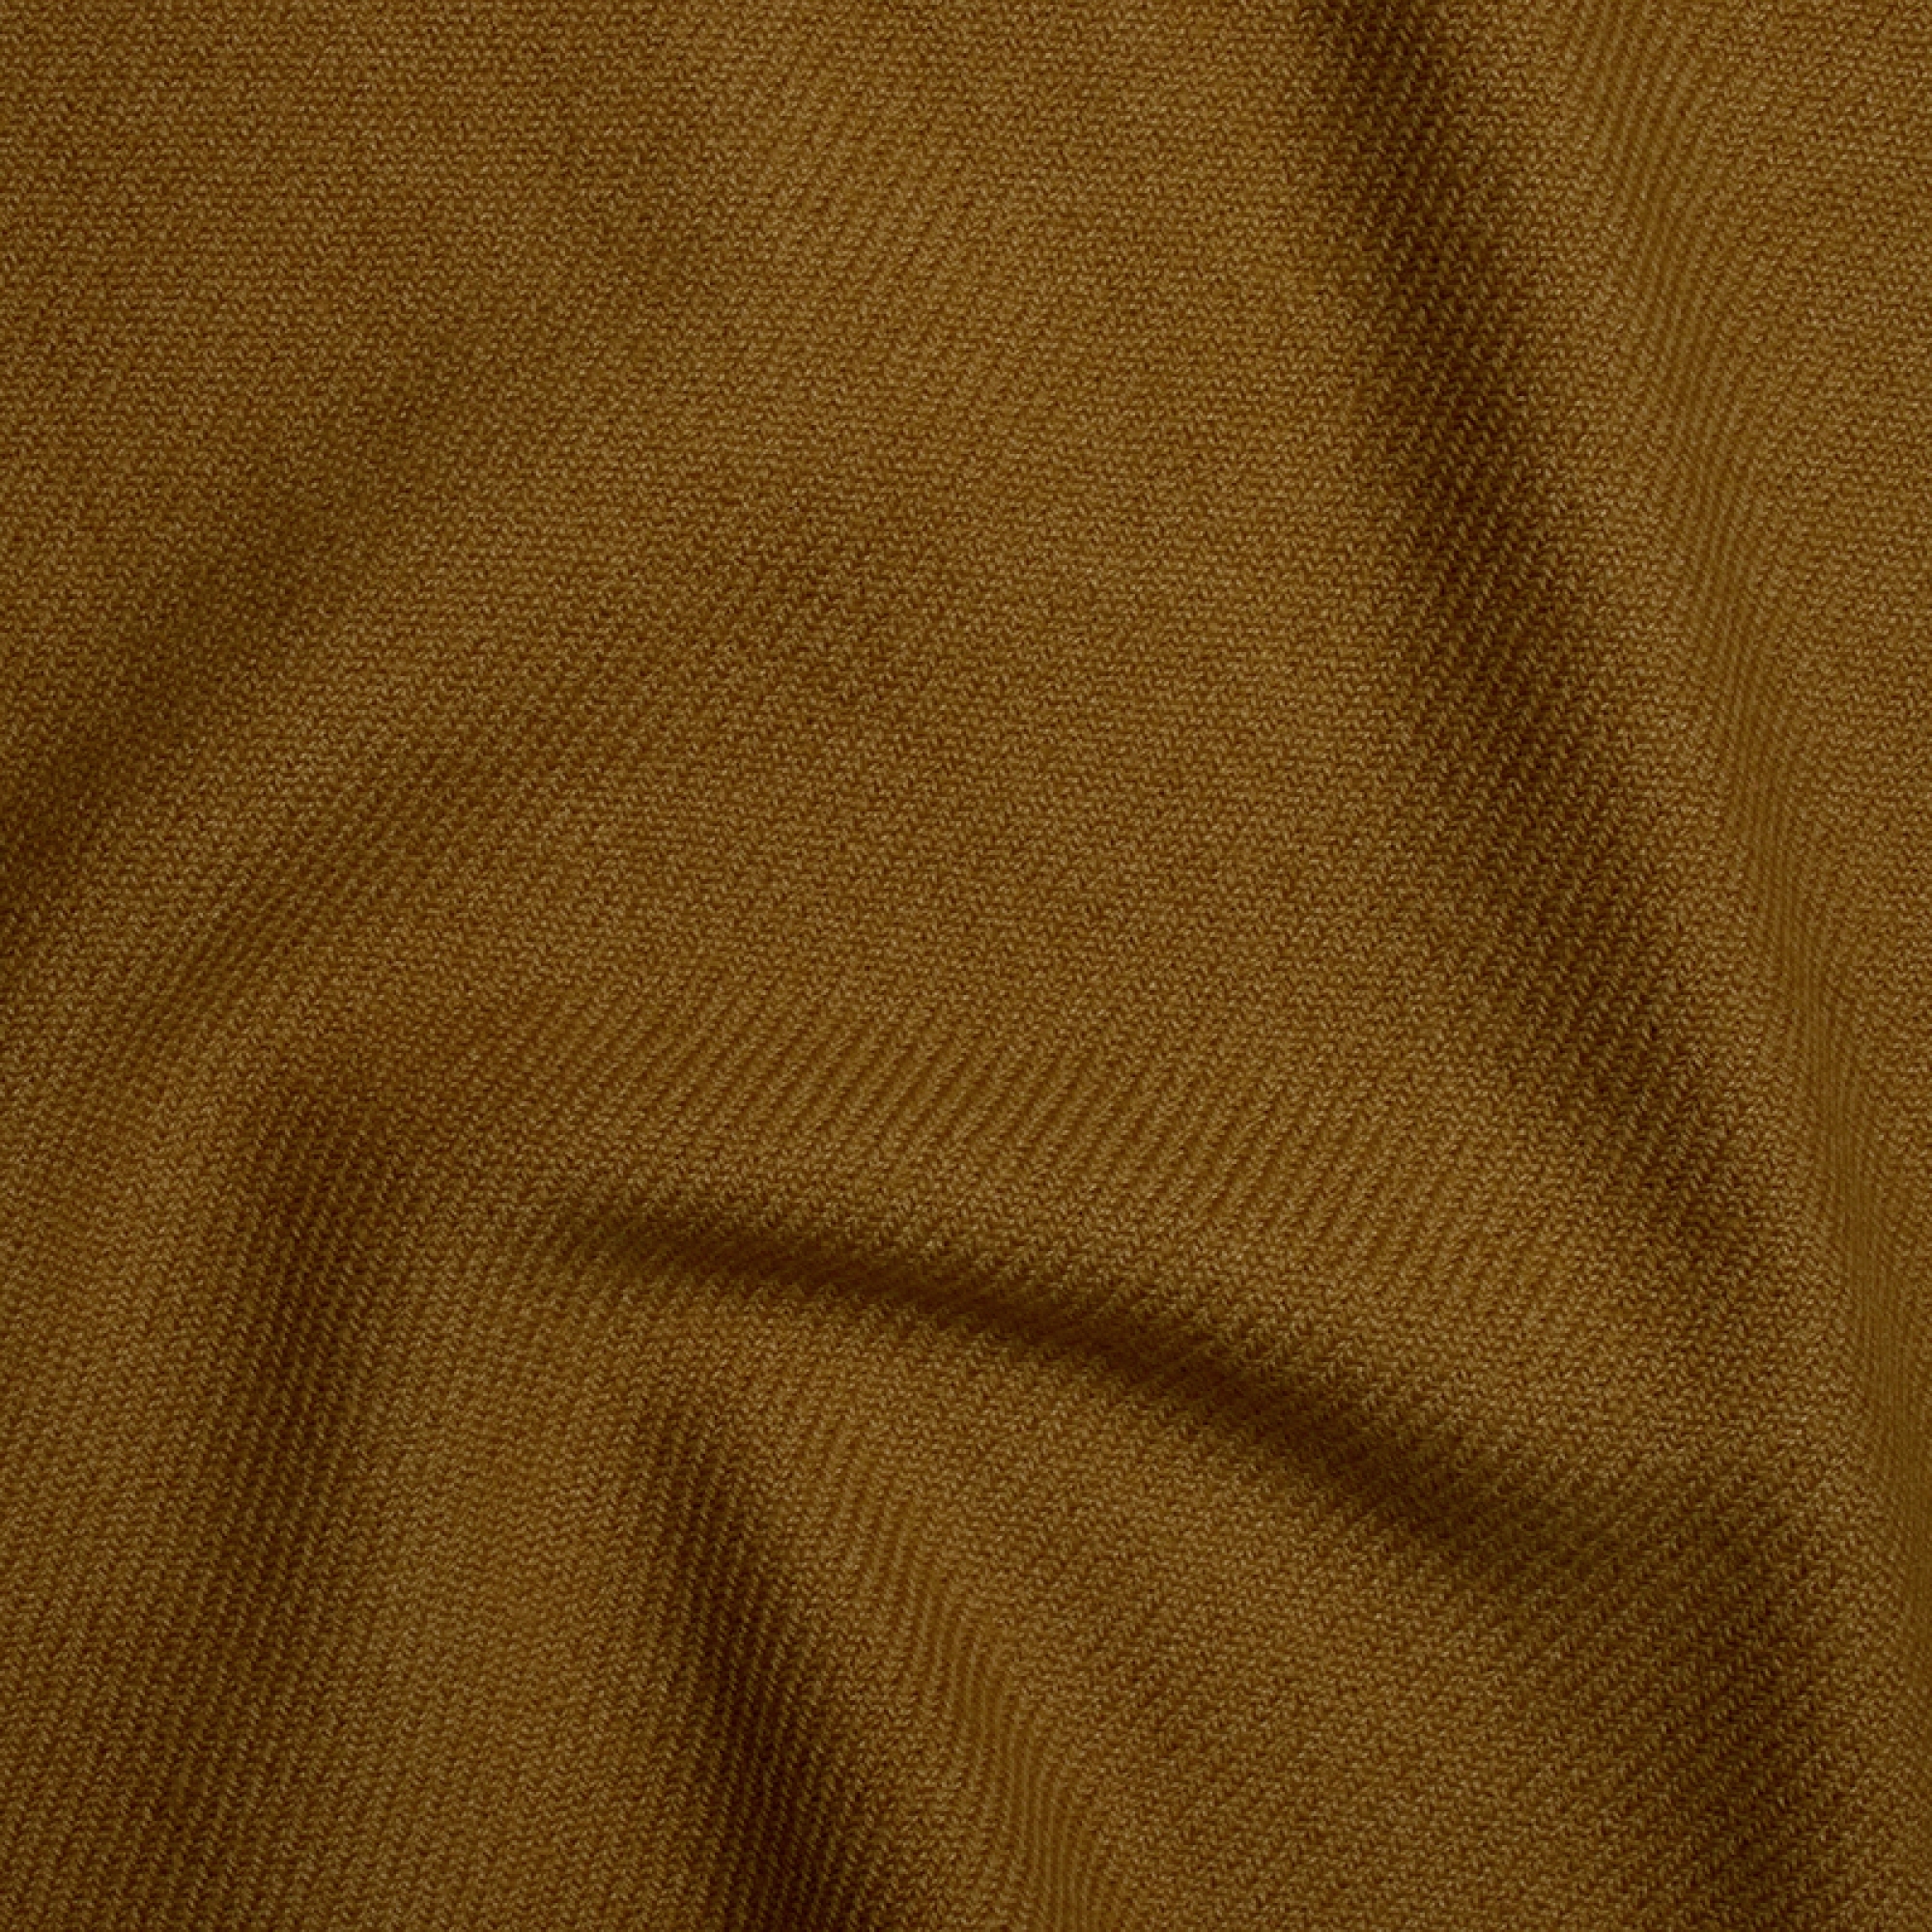 Cashmere accessoires toodoo plain l 220 x 220 erdnussbutter 220x220cm